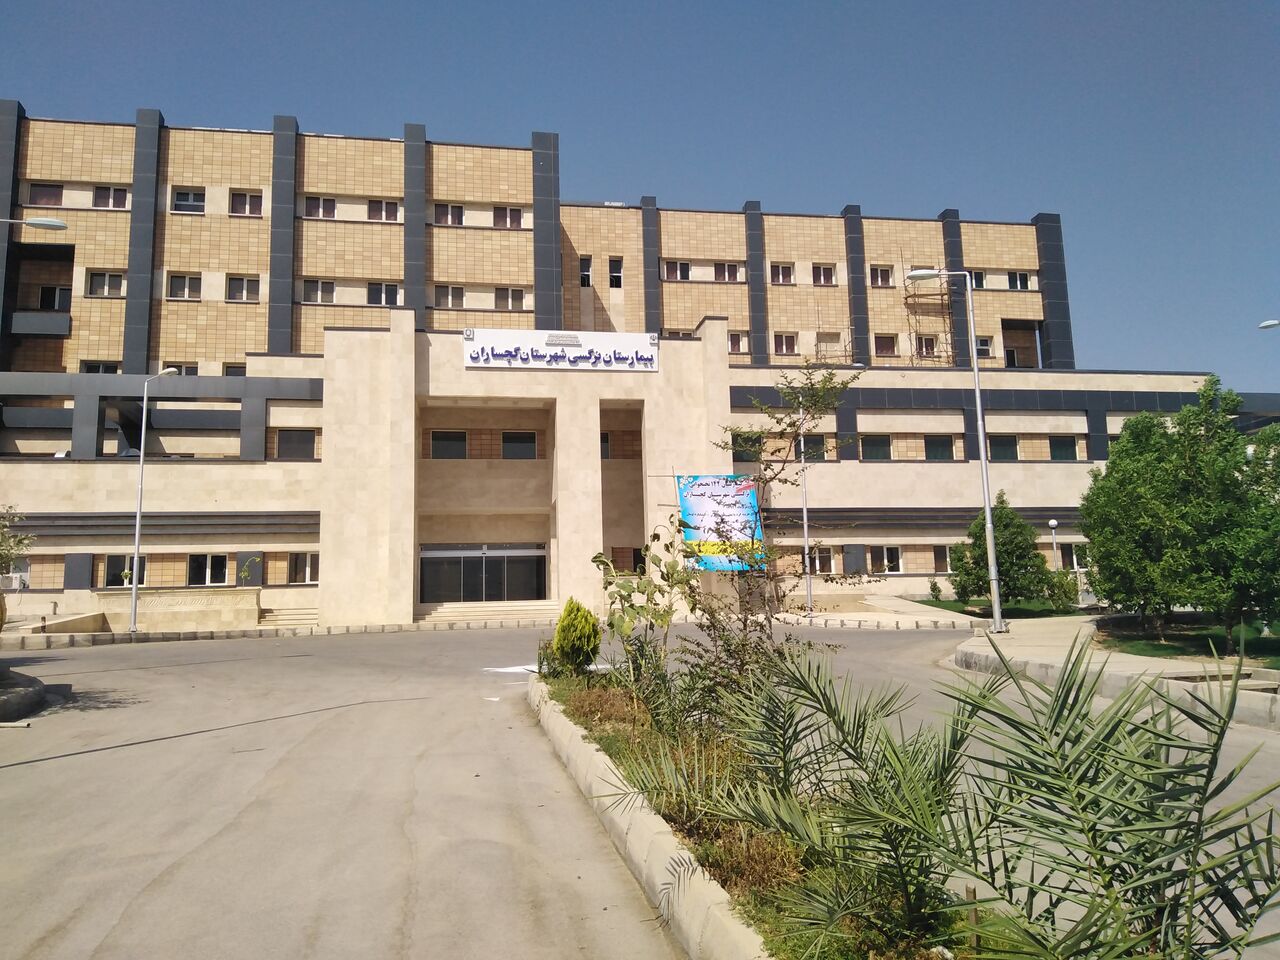 بیمارستان ۱۴۲ تختخوابی نرگسی گچساران افتتاح شد